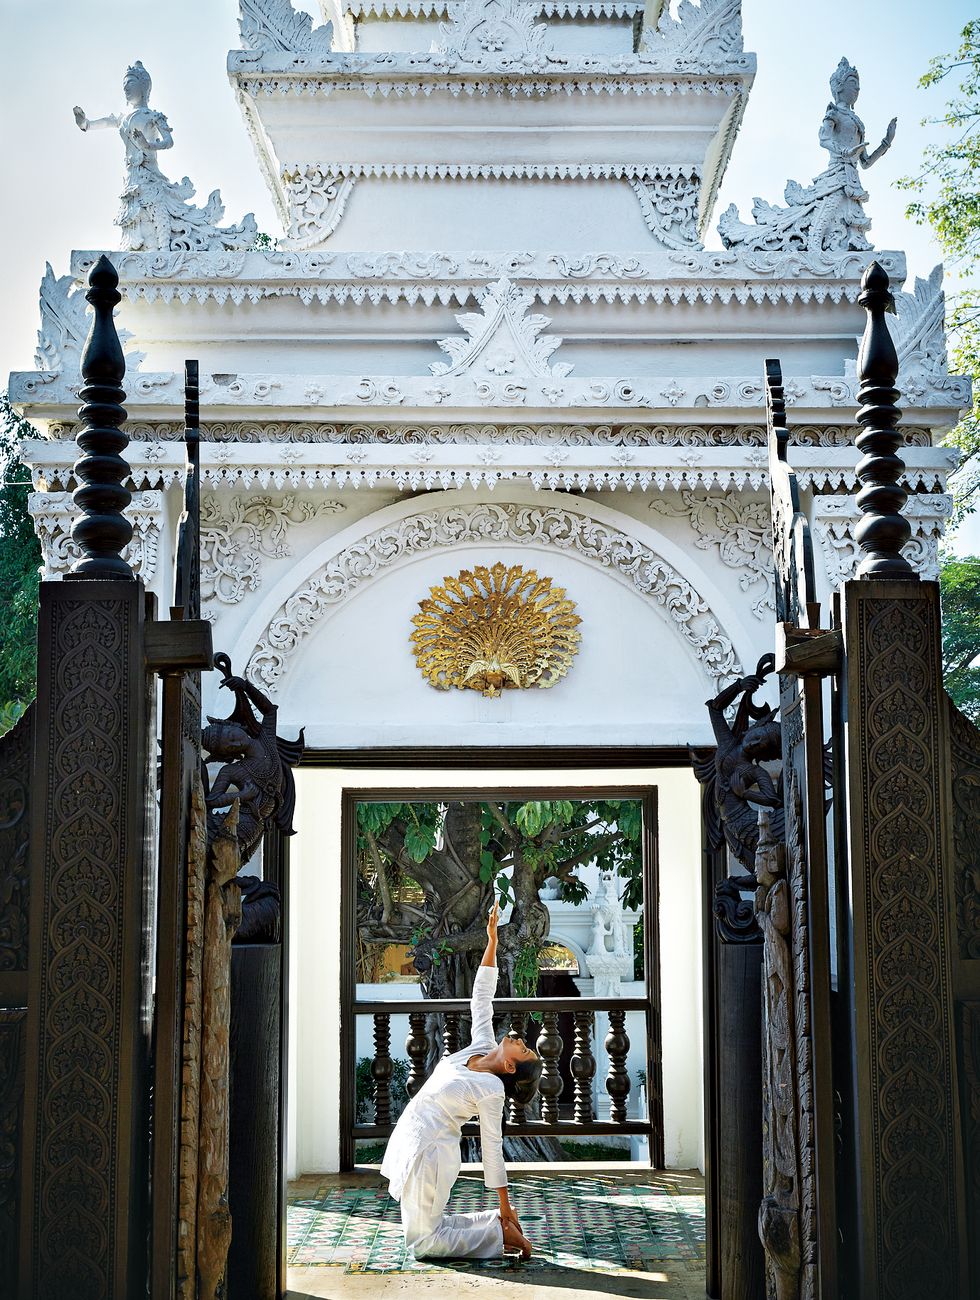 Dhevi Chiang Mai渡假飯店